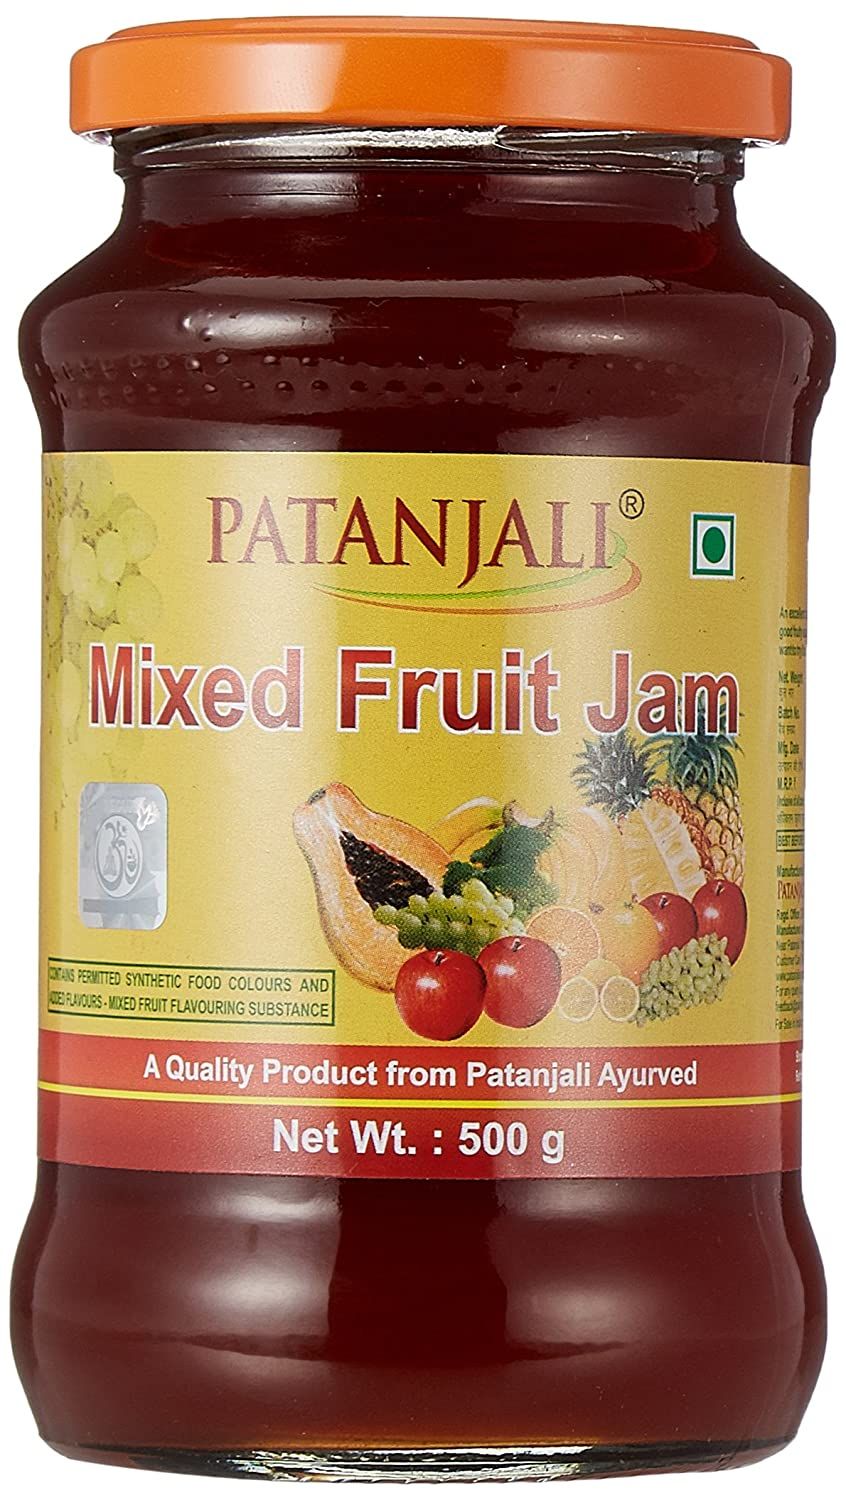 Patanjali Mixed Fruit Jam Image